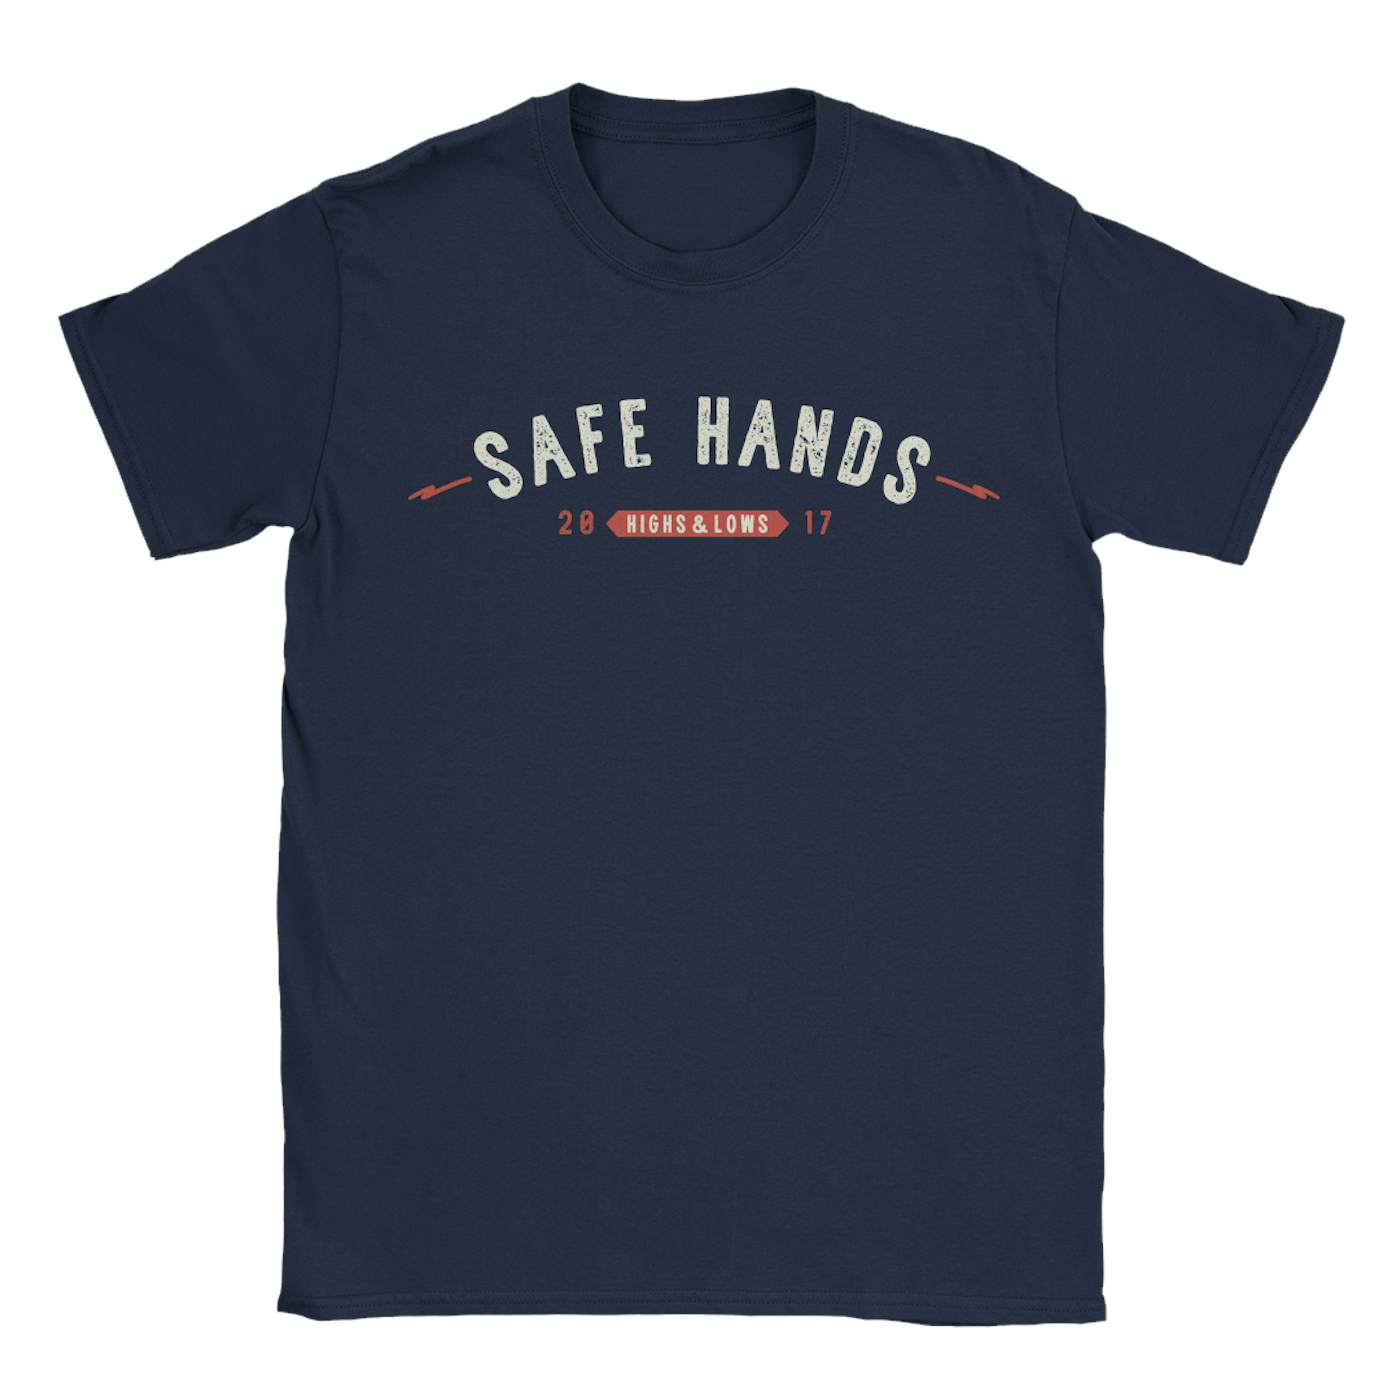 Safe Hands - "Highs & Lows" Shirt (Pre-Order)